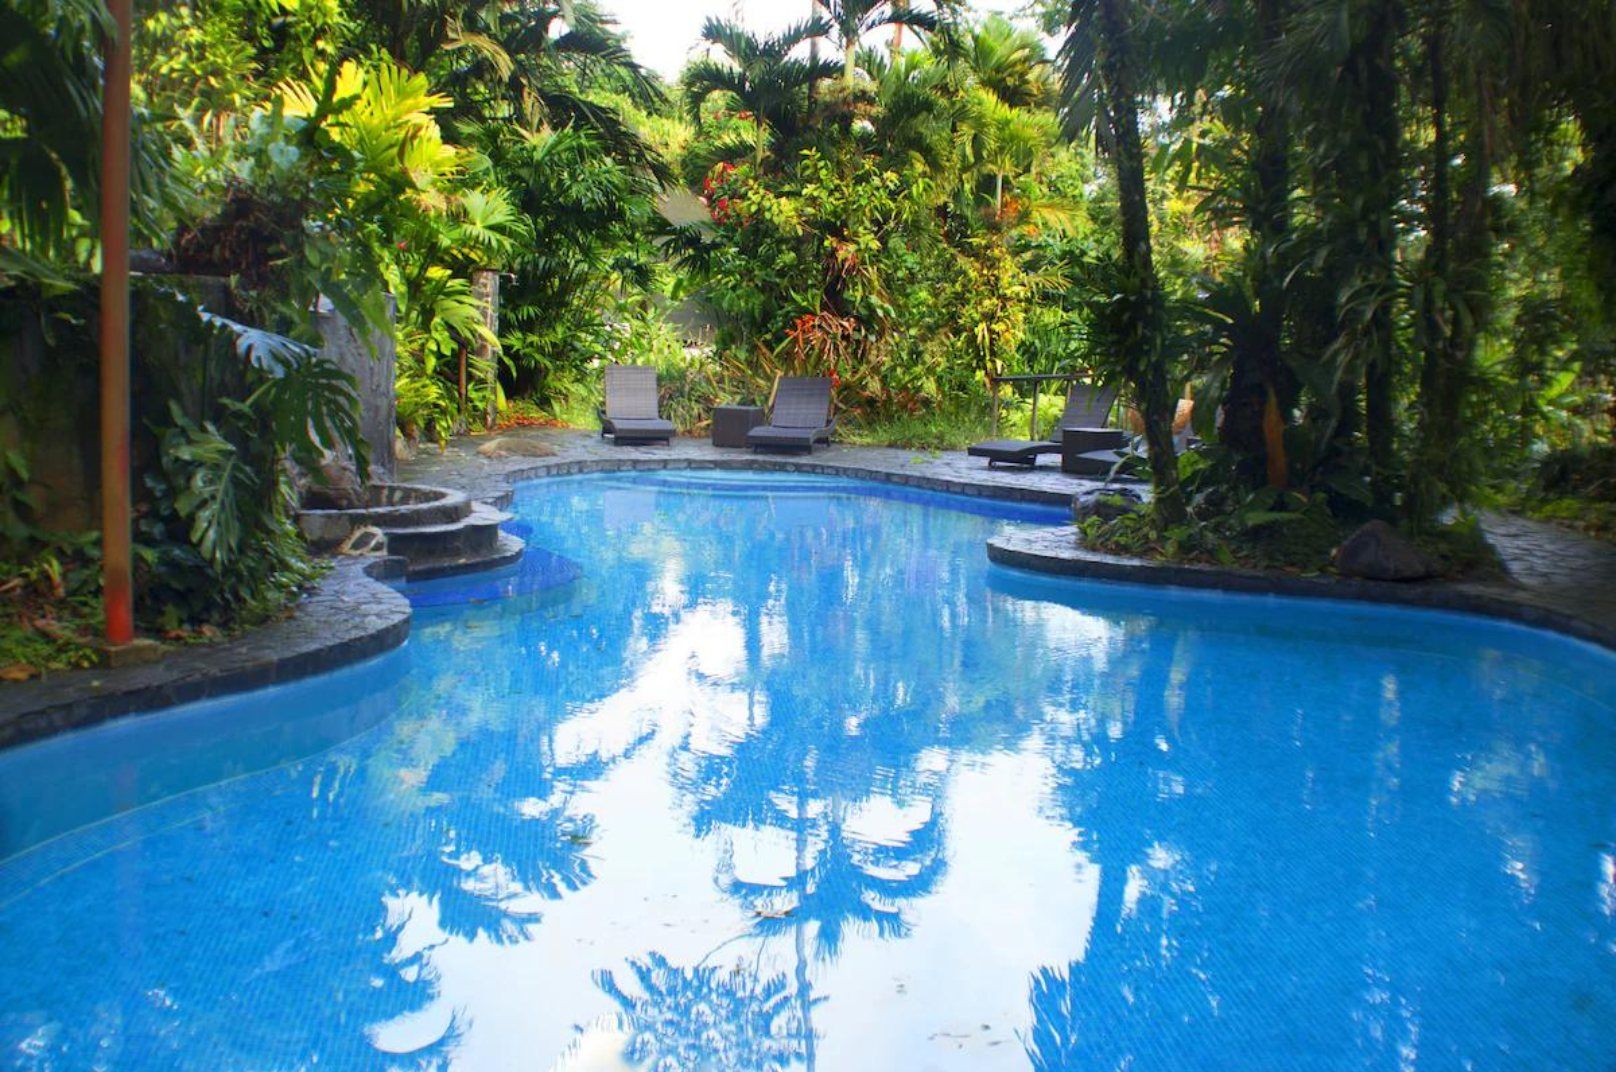 best hotels in La Fortuna, Costa Rica